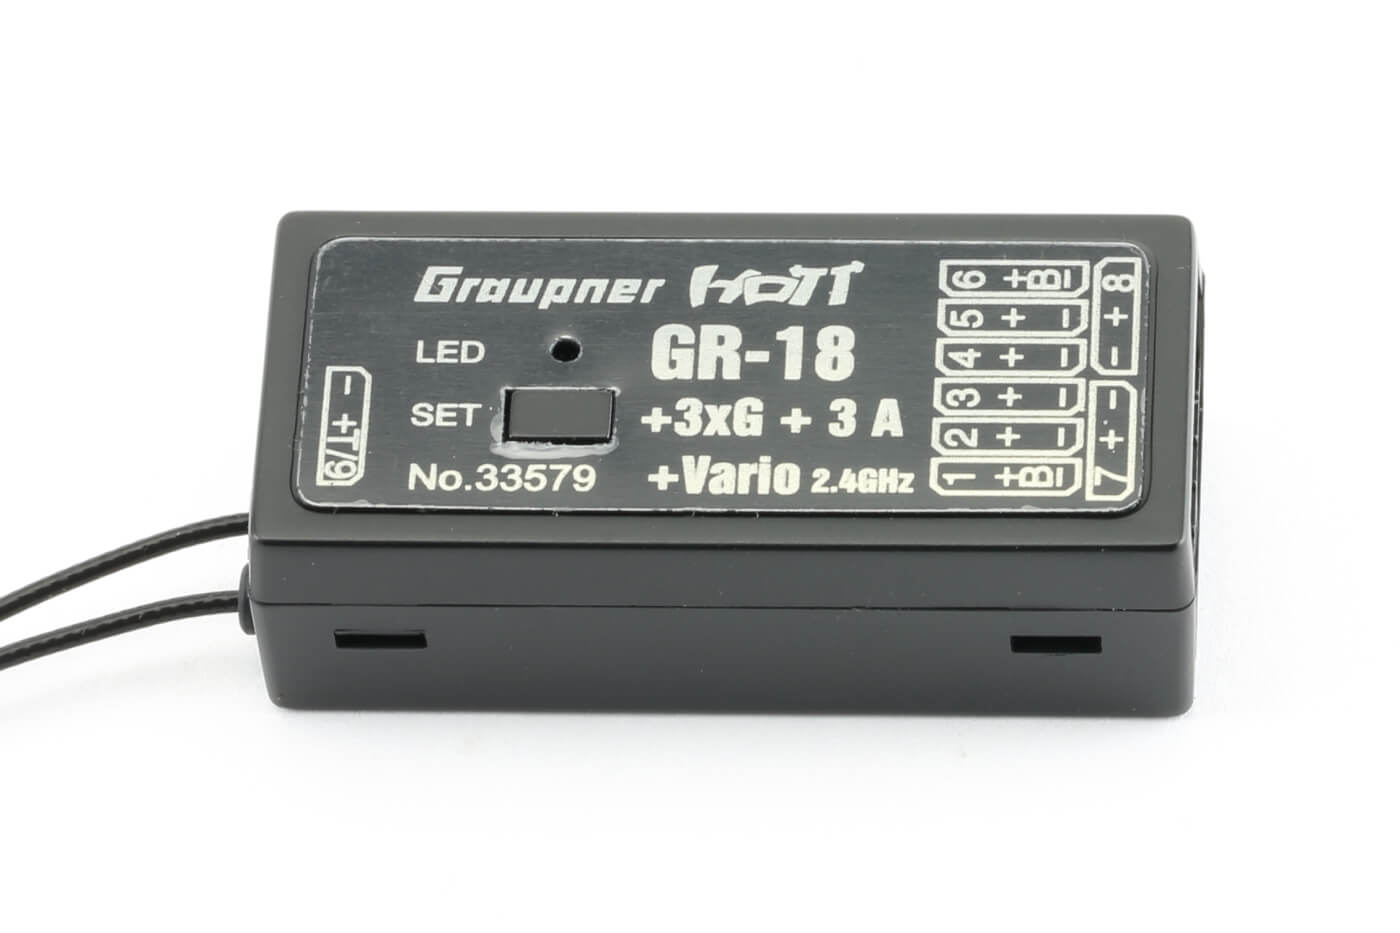 Graupner 33583 Empfänger GR-24 PRO 3xG+3A+3M+Vario HoTT 3 Kreisel/Gyros u Vario